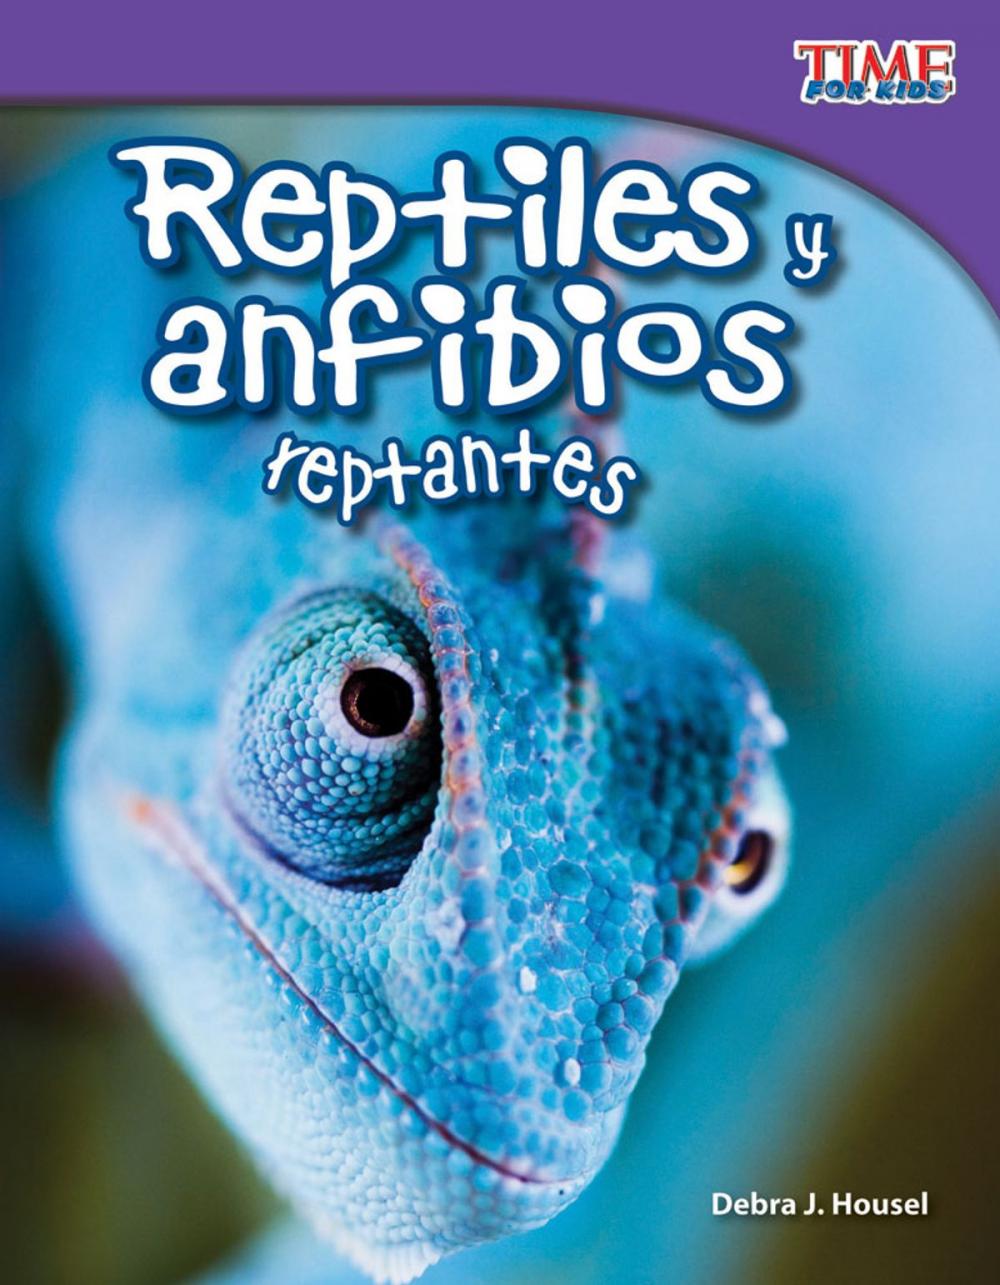 Big bigCover of Reptiles y anfibios reptantes